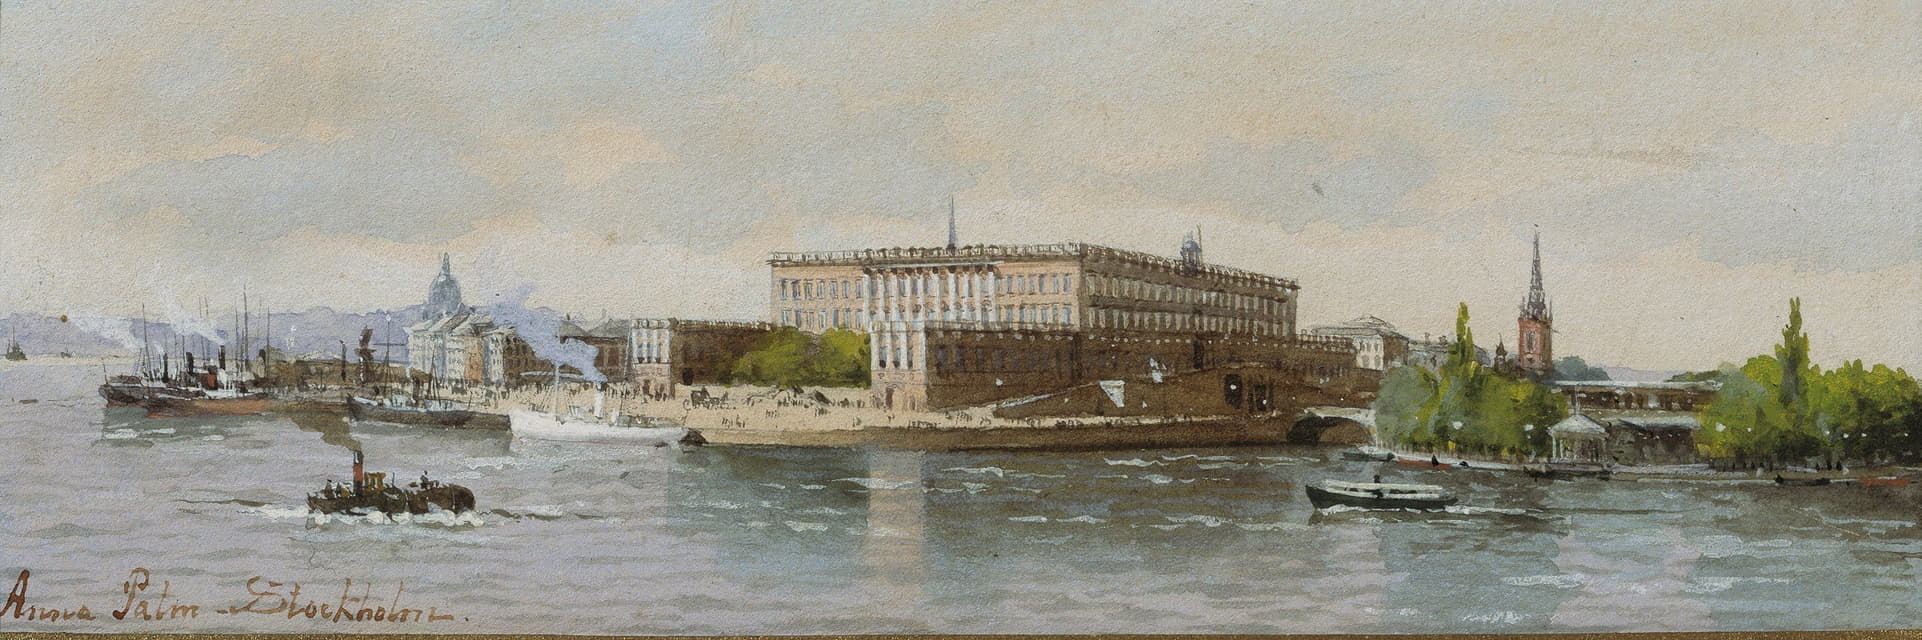 斯德哥尔摩皇家宫殿景观